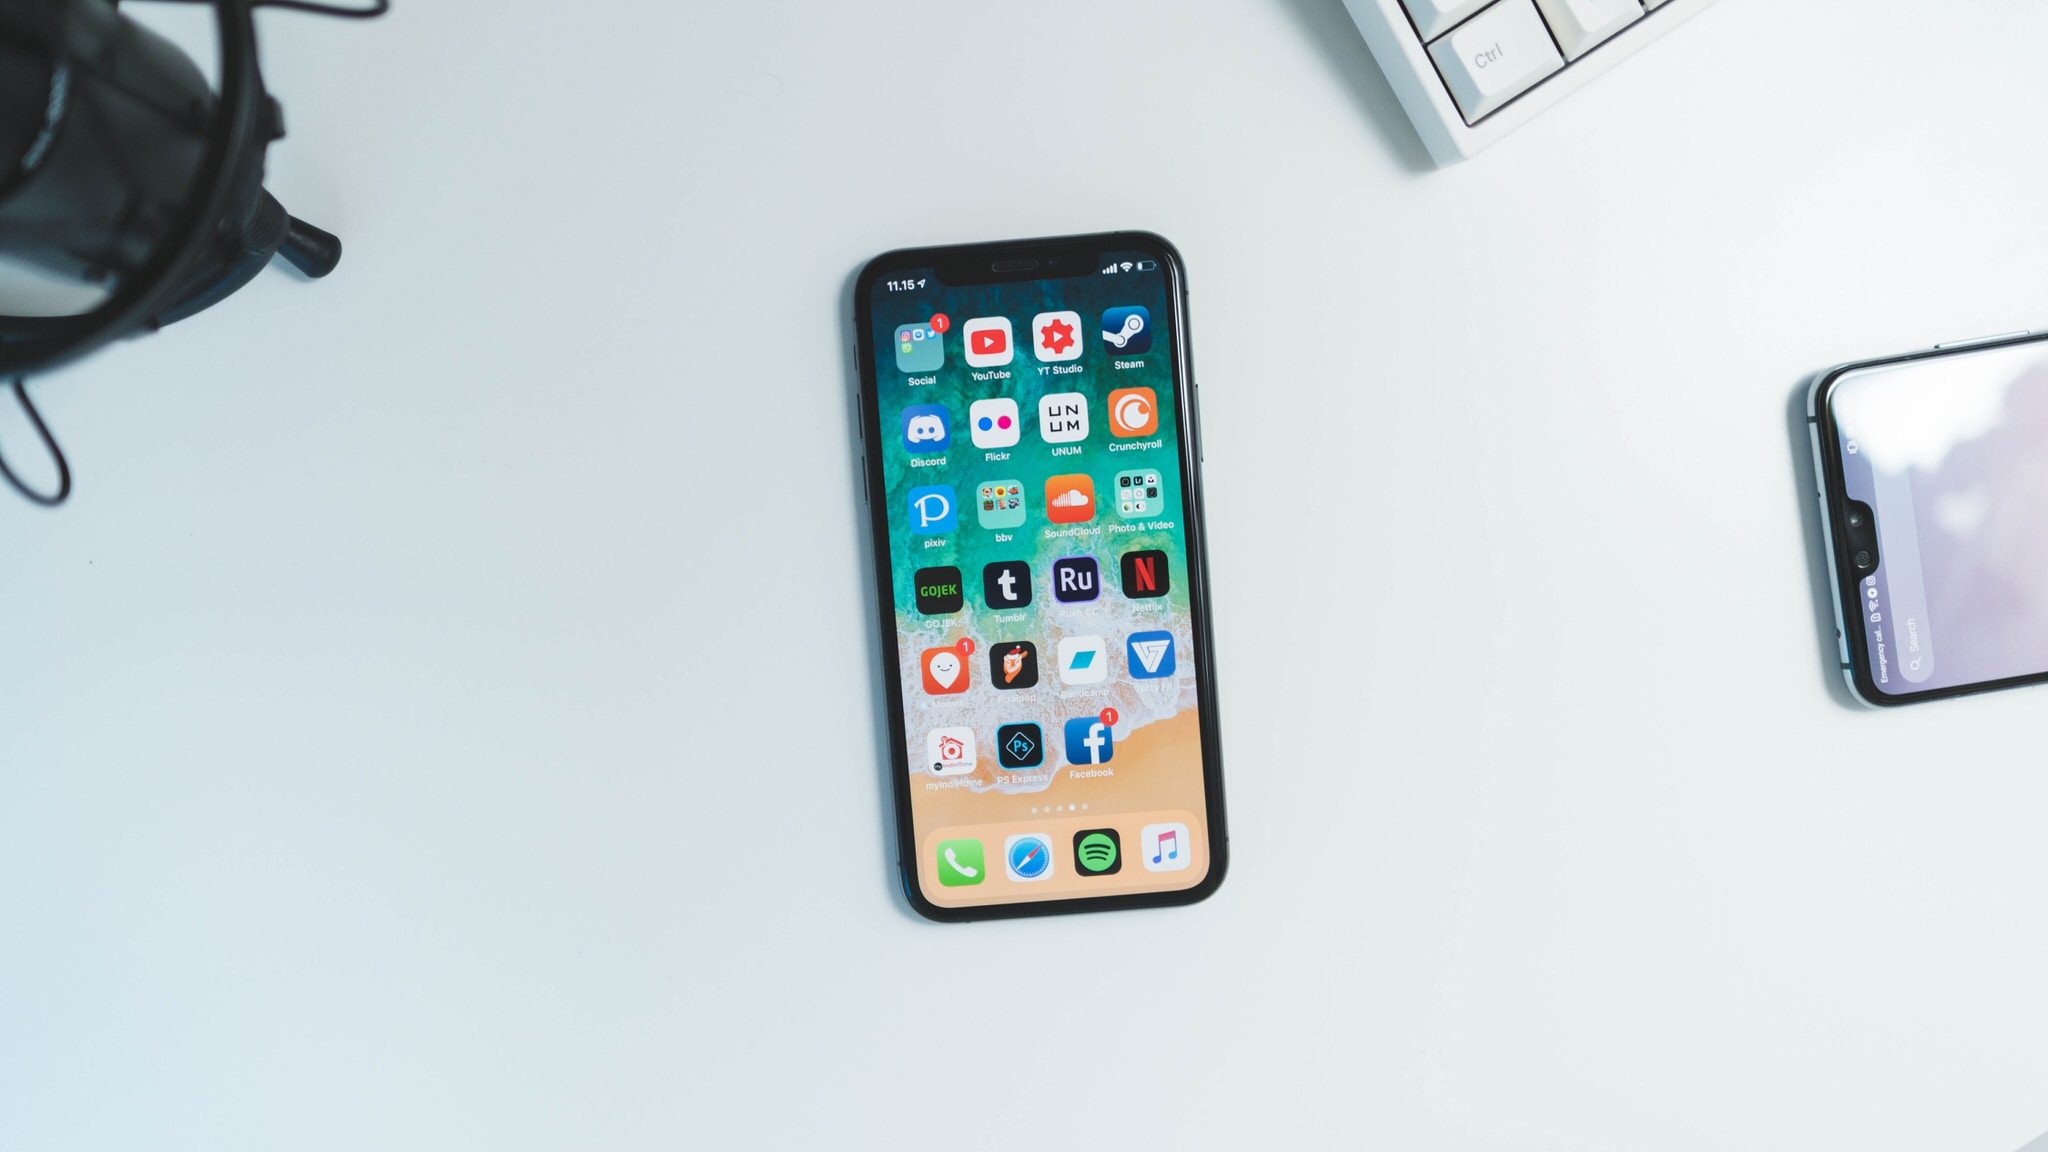 Apple bán được 65,9 triệu iPhone trong Q1/2019, ít hơn năm trước tới 11,4 triệu